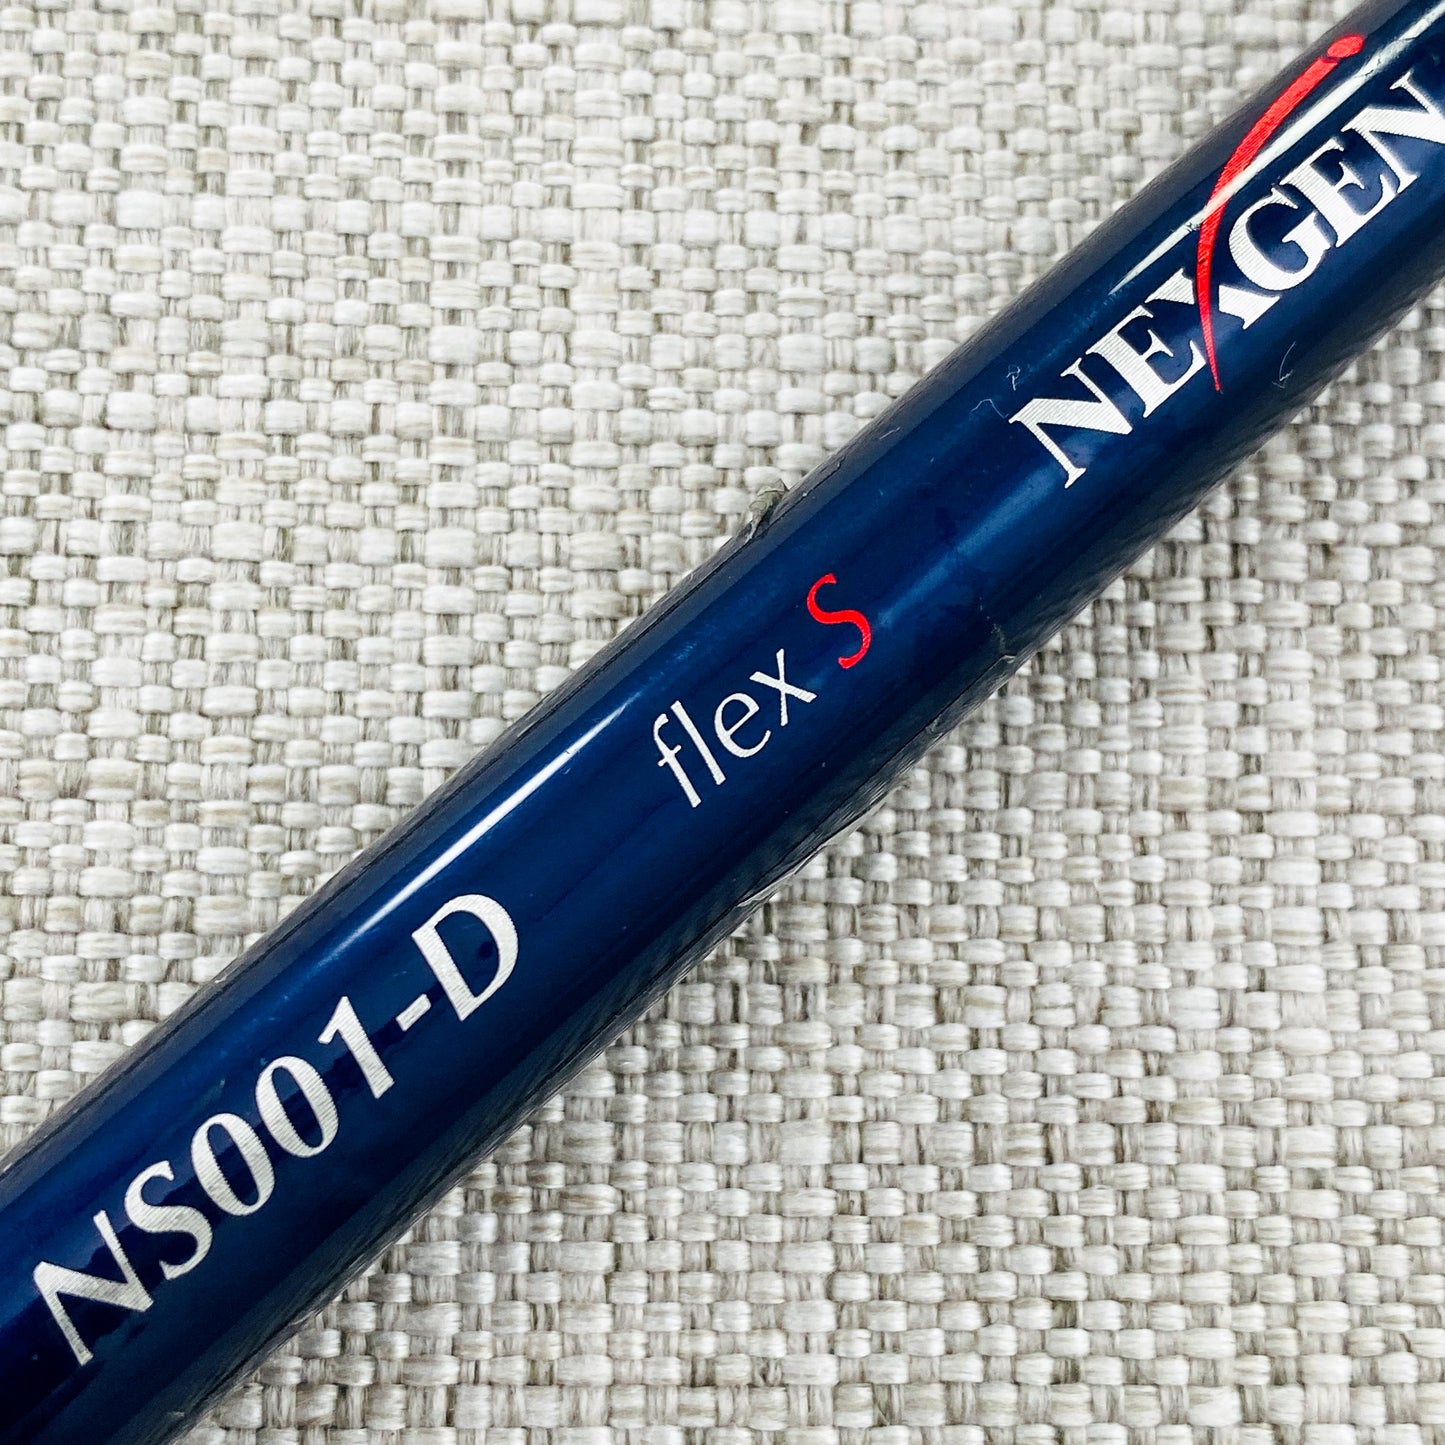 NEX-Gen ND001 Driver. 9.5 Degree, Stiff Flex - Good Condition # T619